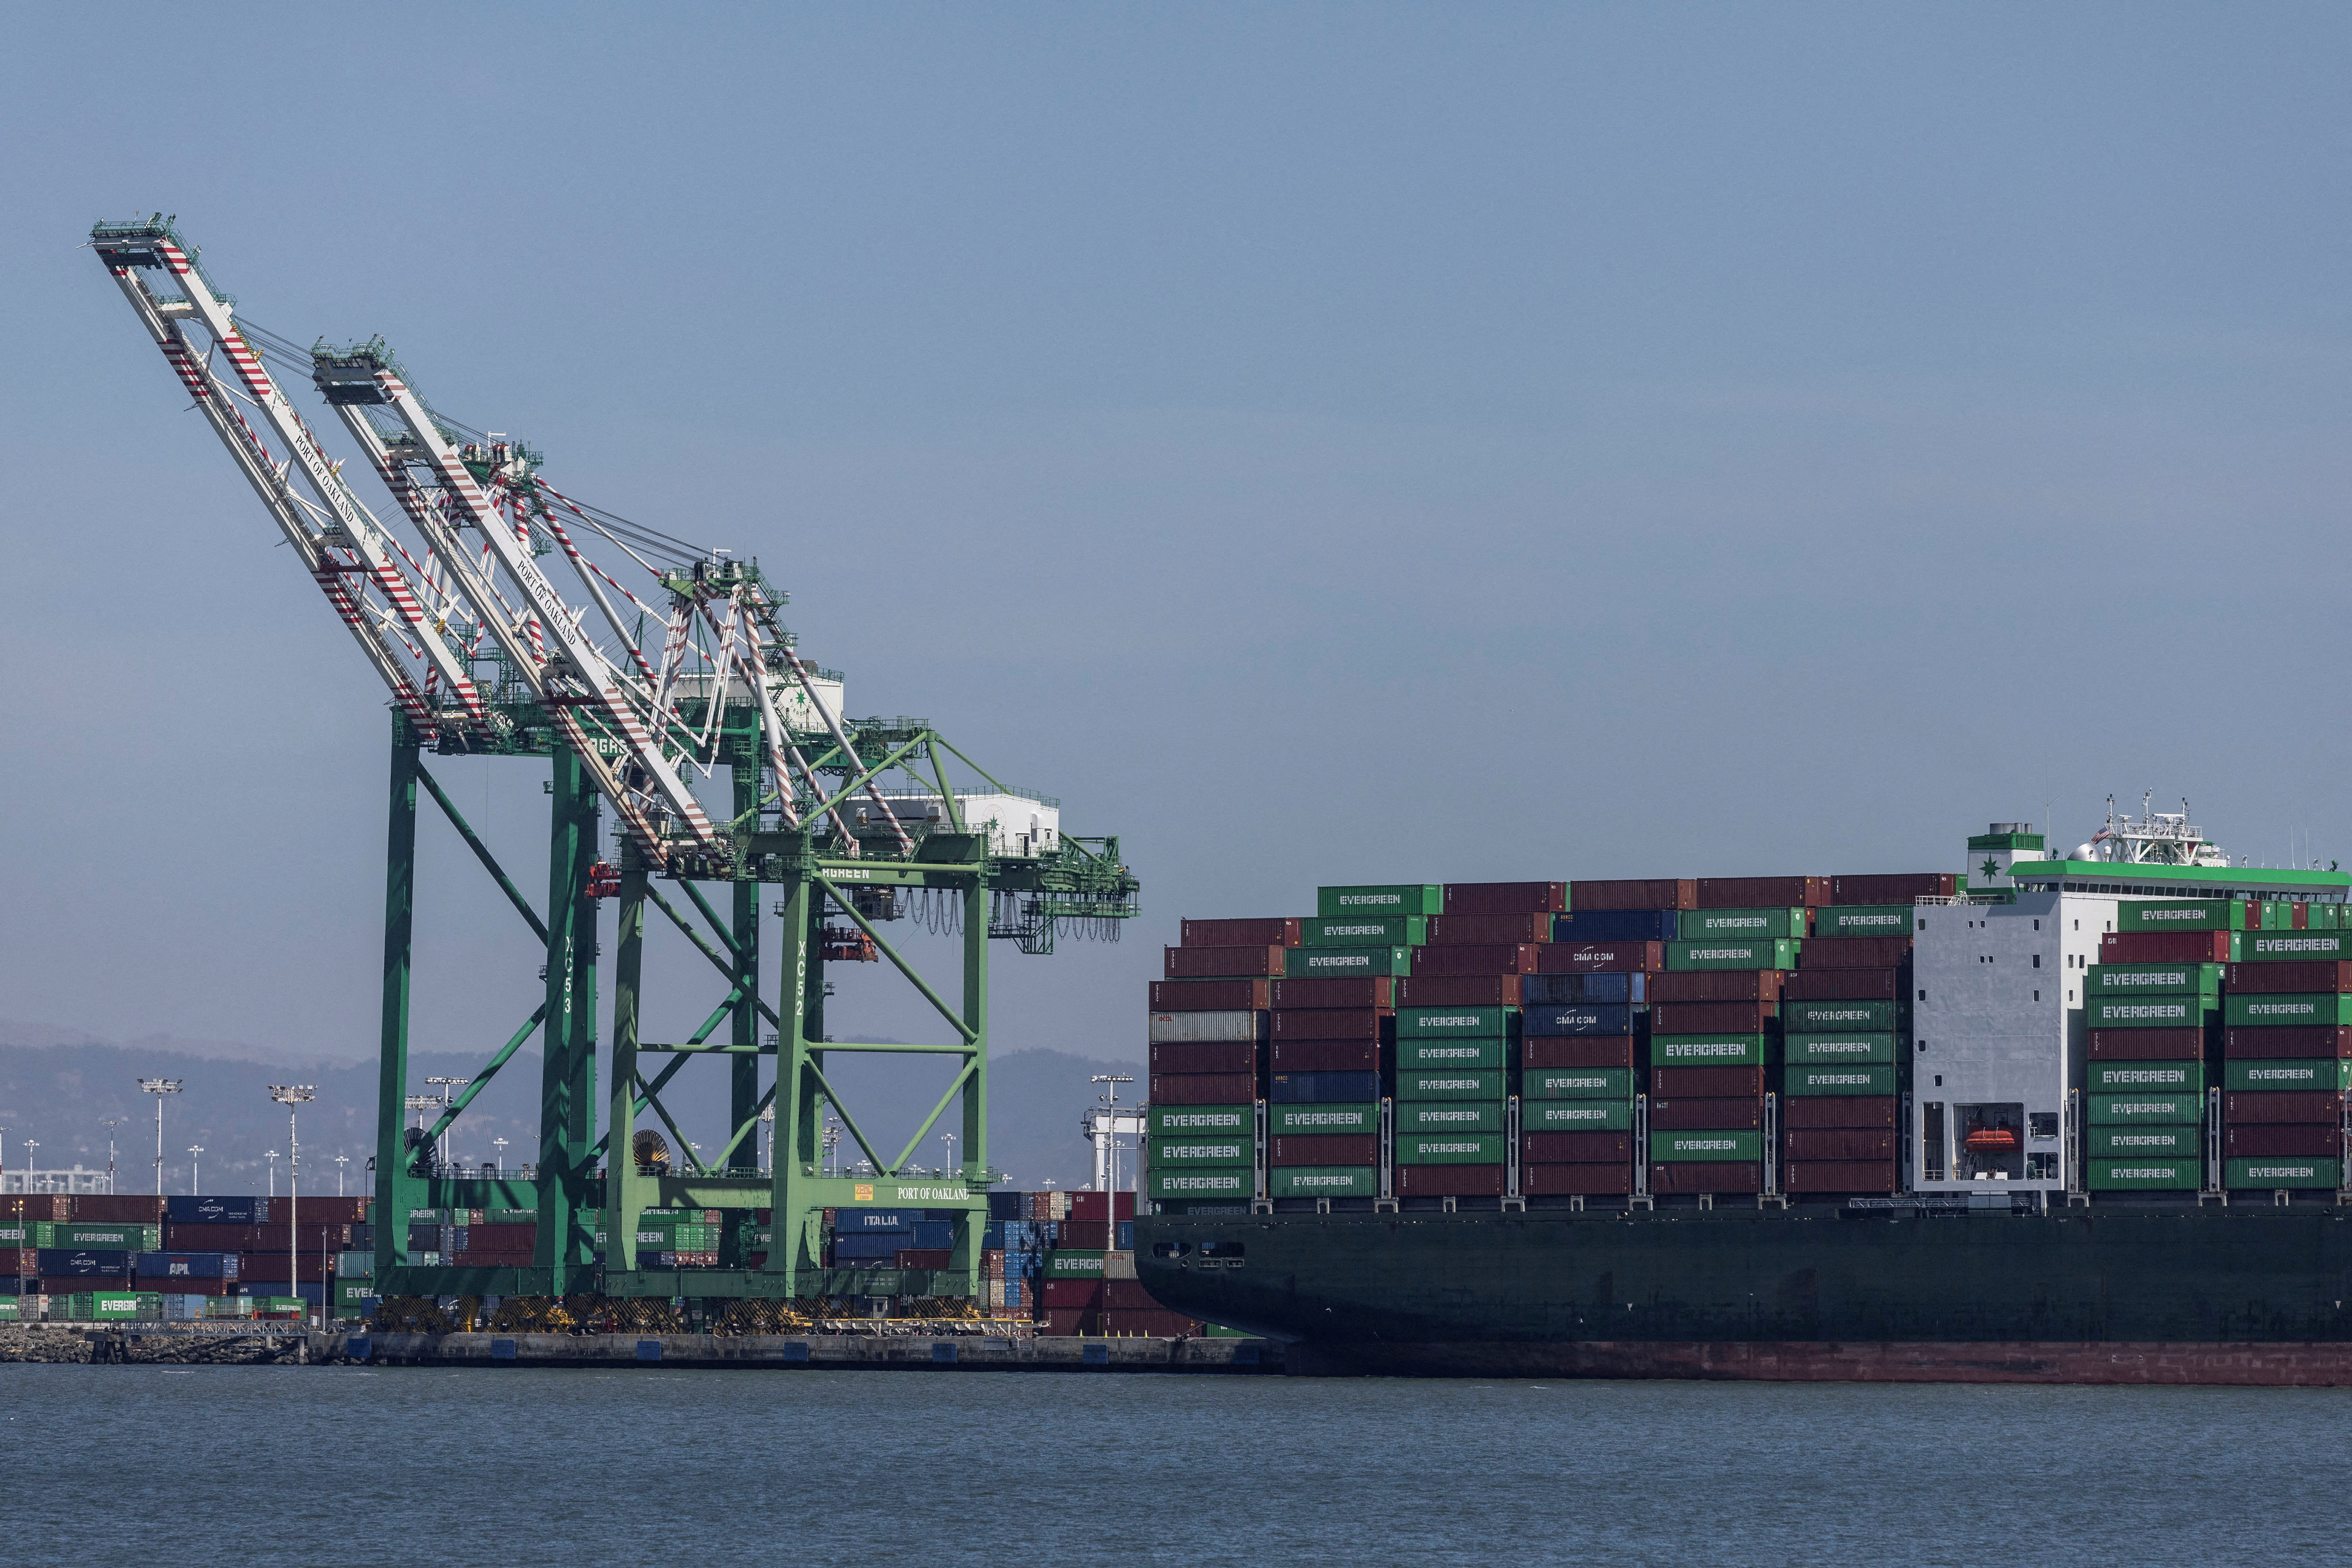 A cargo ship is seen near the port of Oakland, California